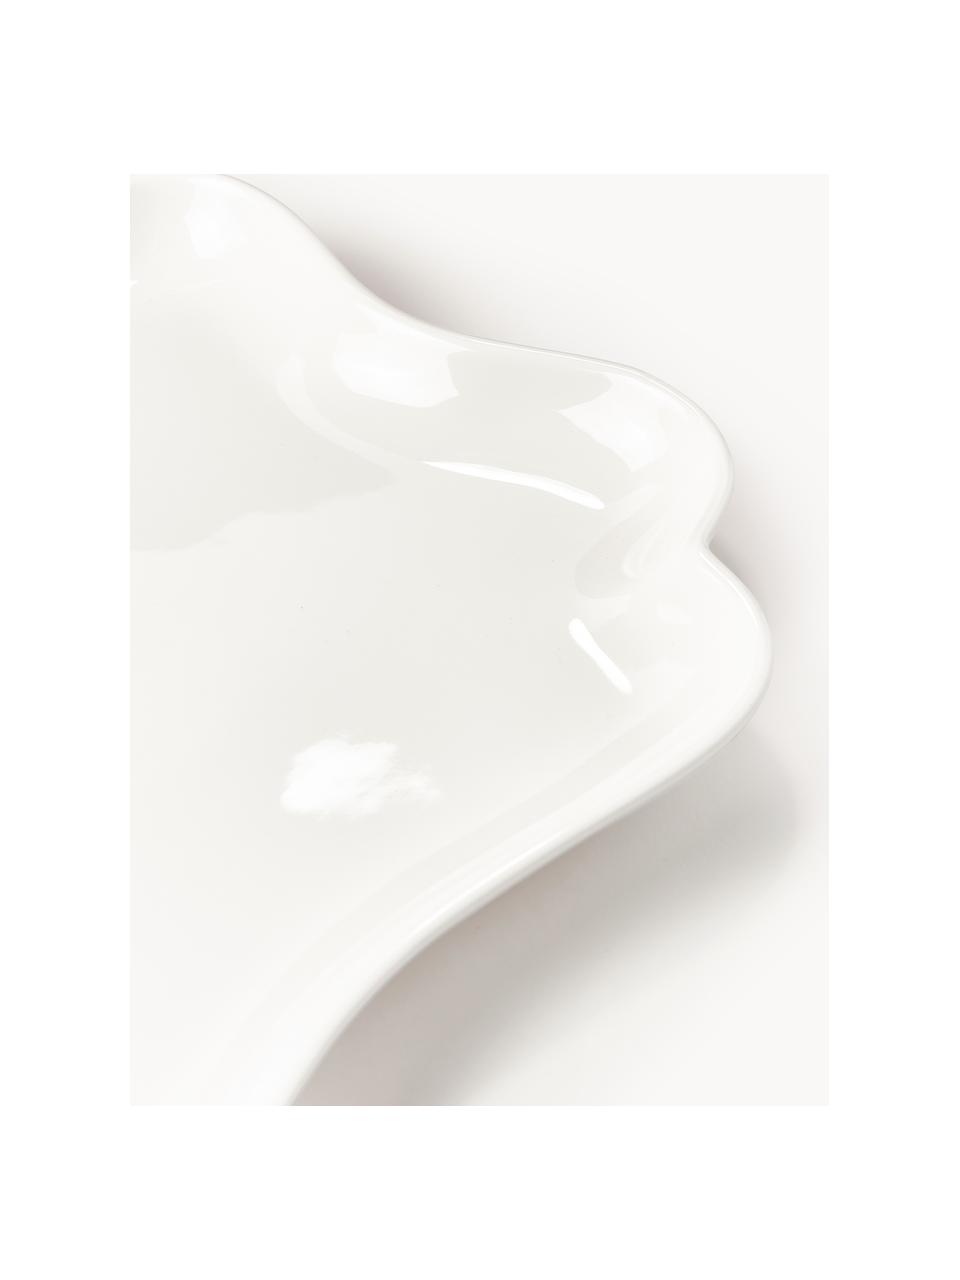 Porzellan-Servierplatte Nera, Porzellan, glasiert, Weiß, glänzend, B 34 x T 28 cm